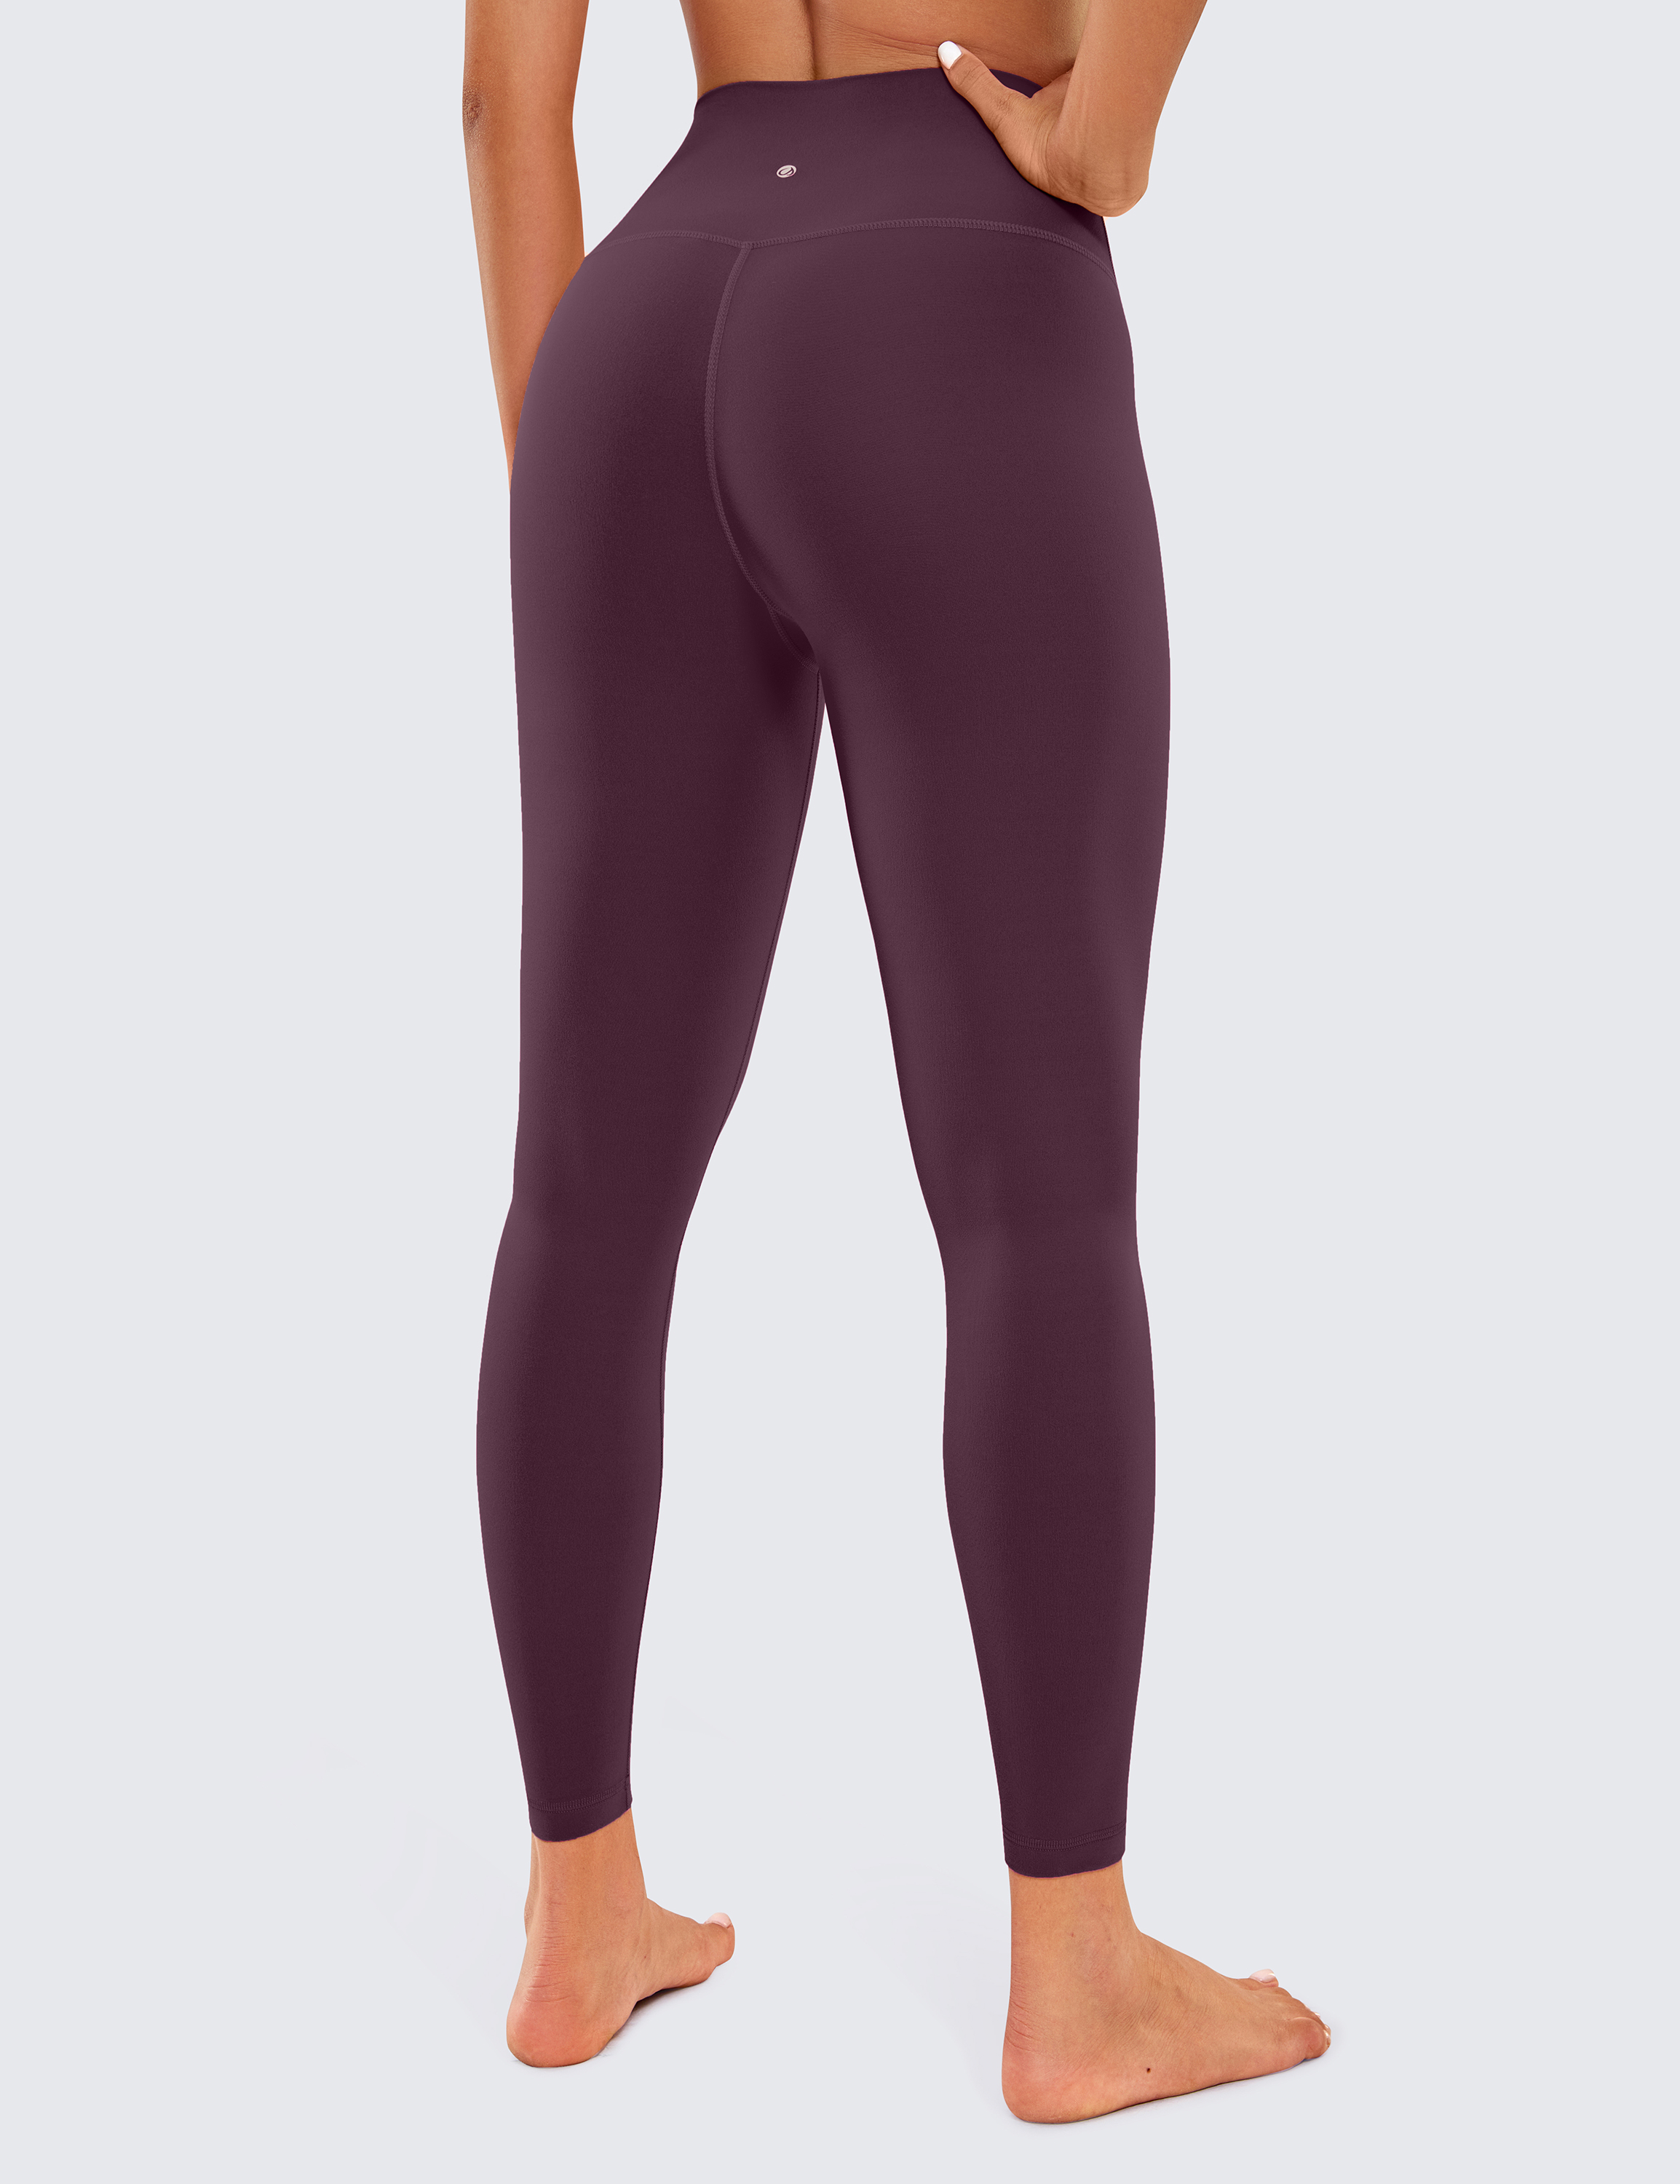 CRZ YOGA Women's Butterluxe Yoga Pants 25 High Waist Soft Workout